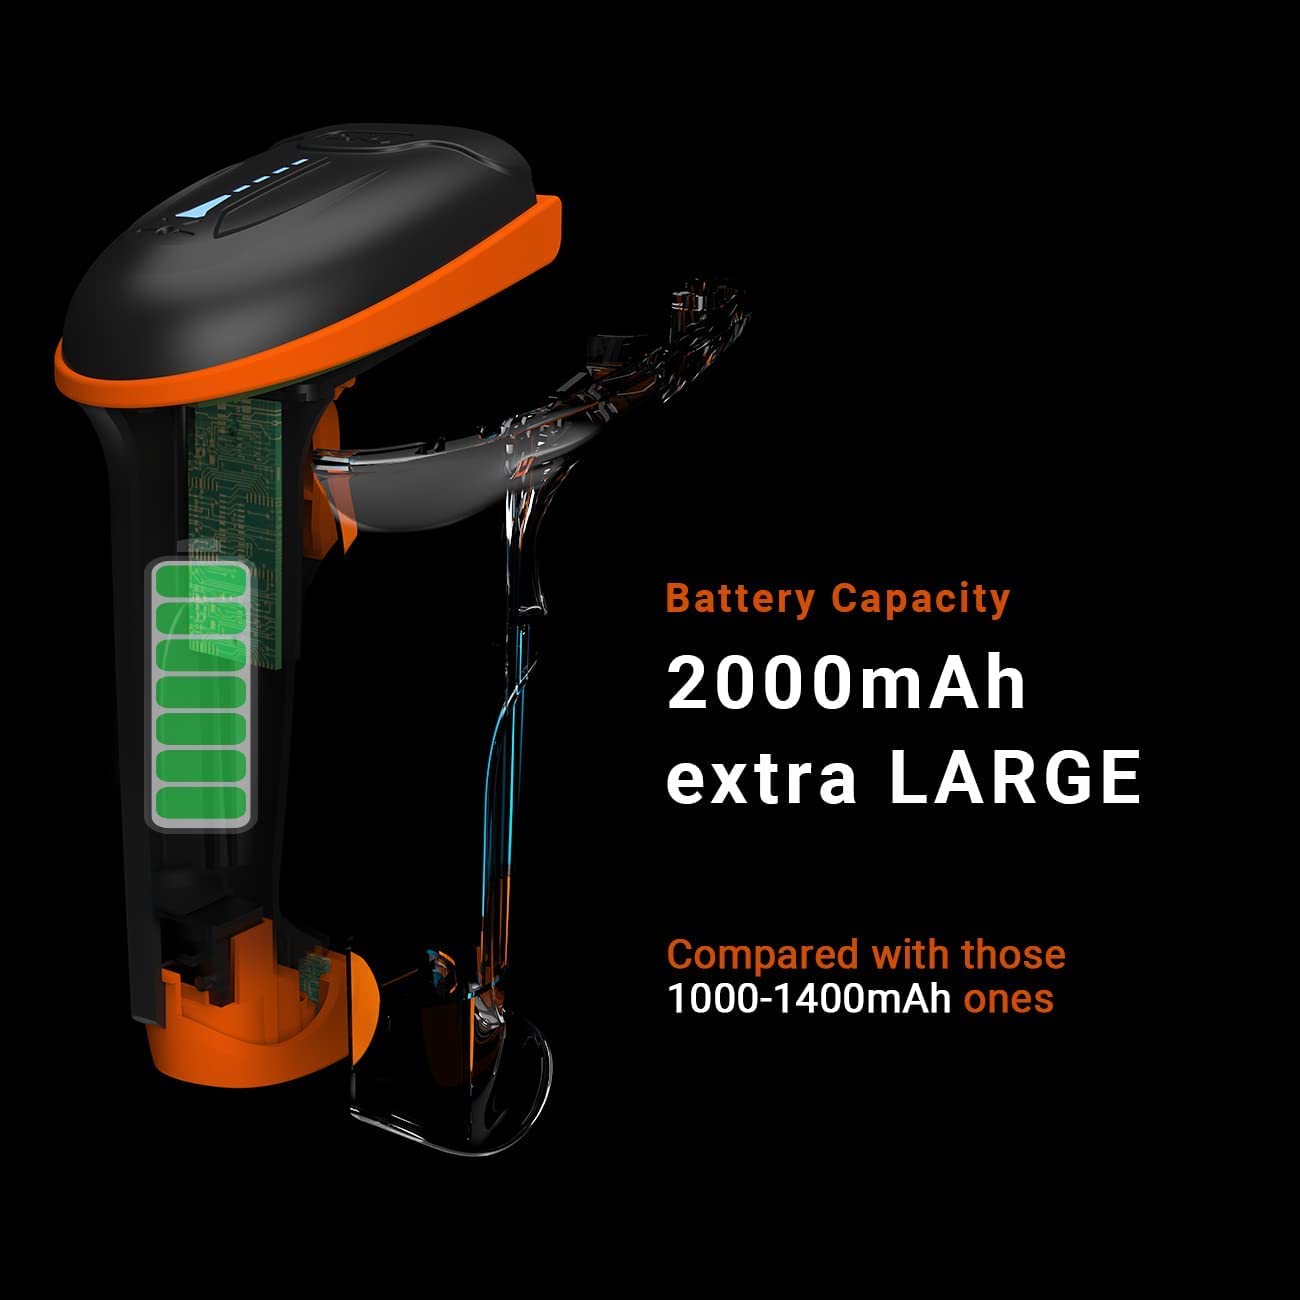 tera-5100-laser-1d-wireless-barcode-scanner orange